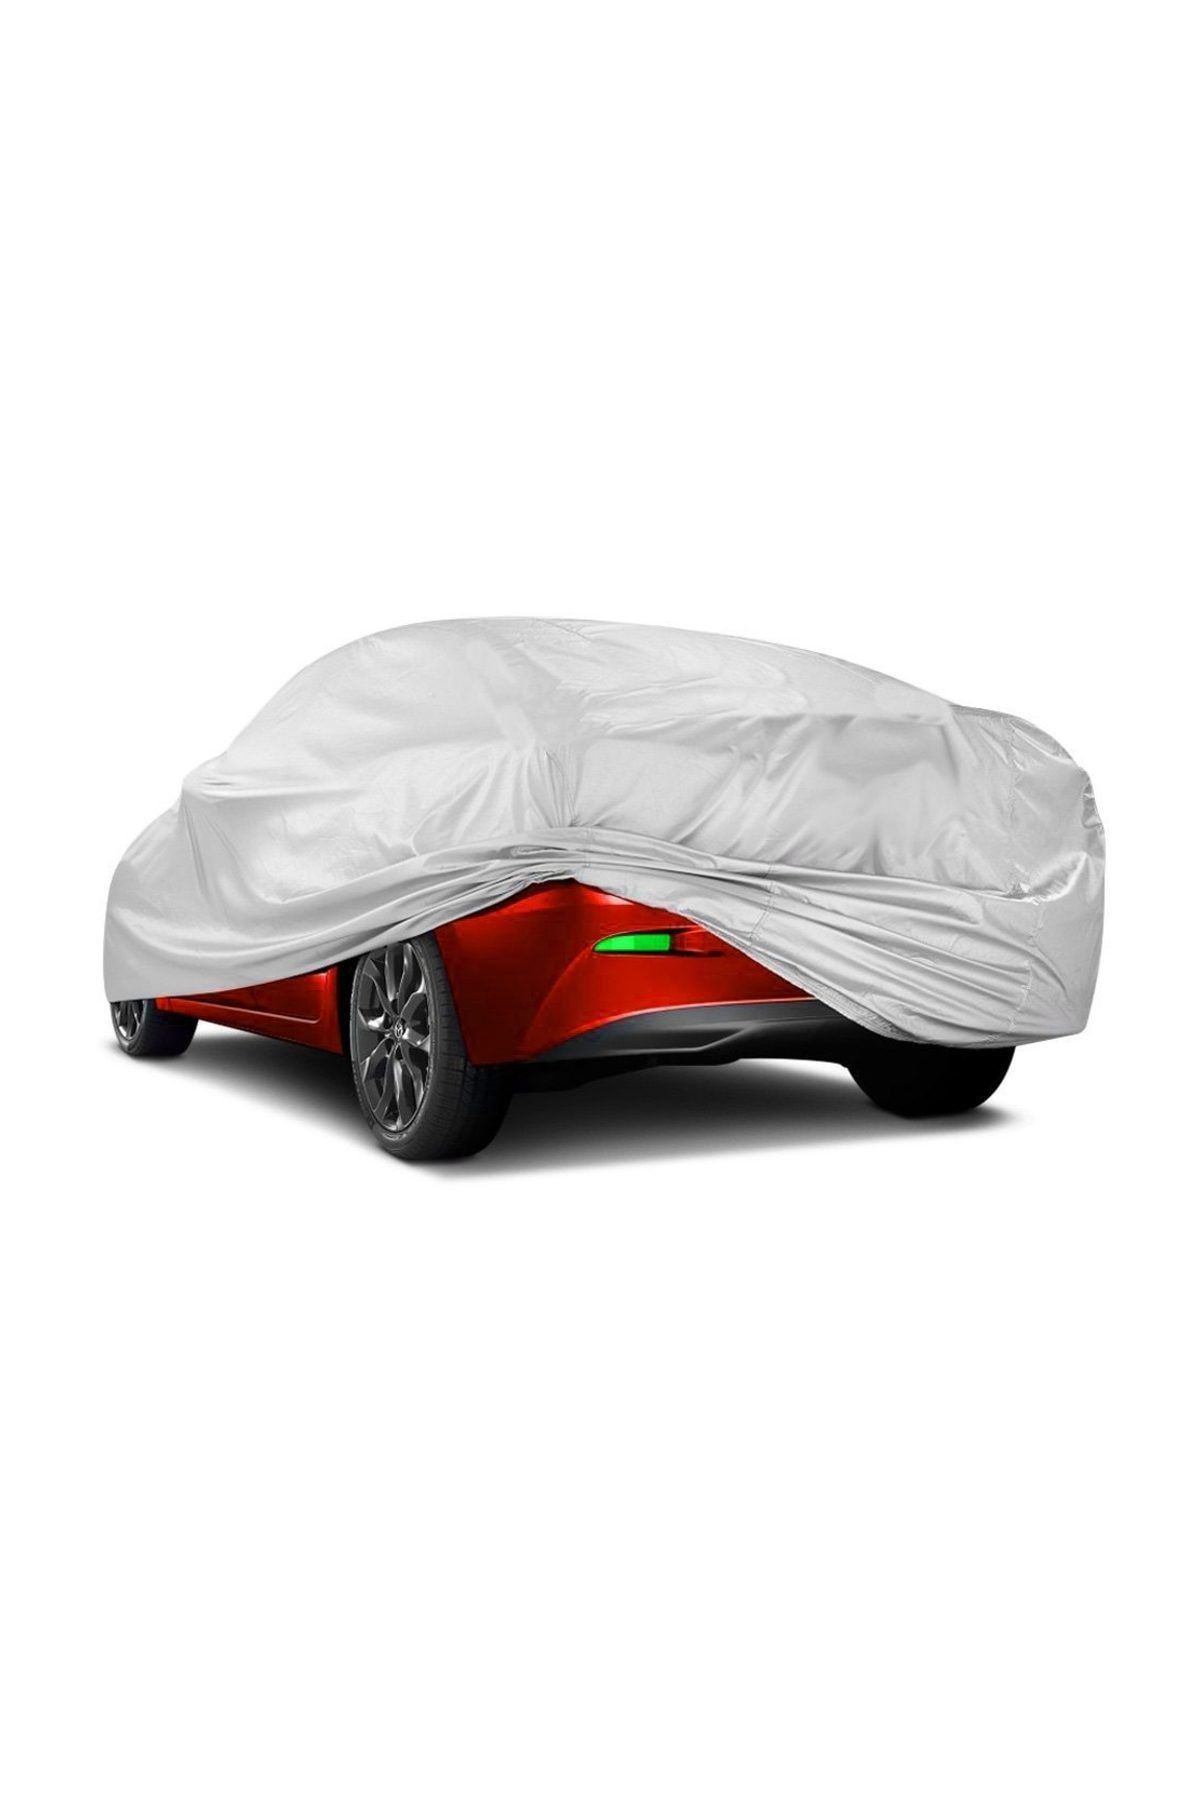 AutoEN CoverPlus Dacia Logan Sedan Auto Tarpaulin Car Tent - Gray - Trendyol